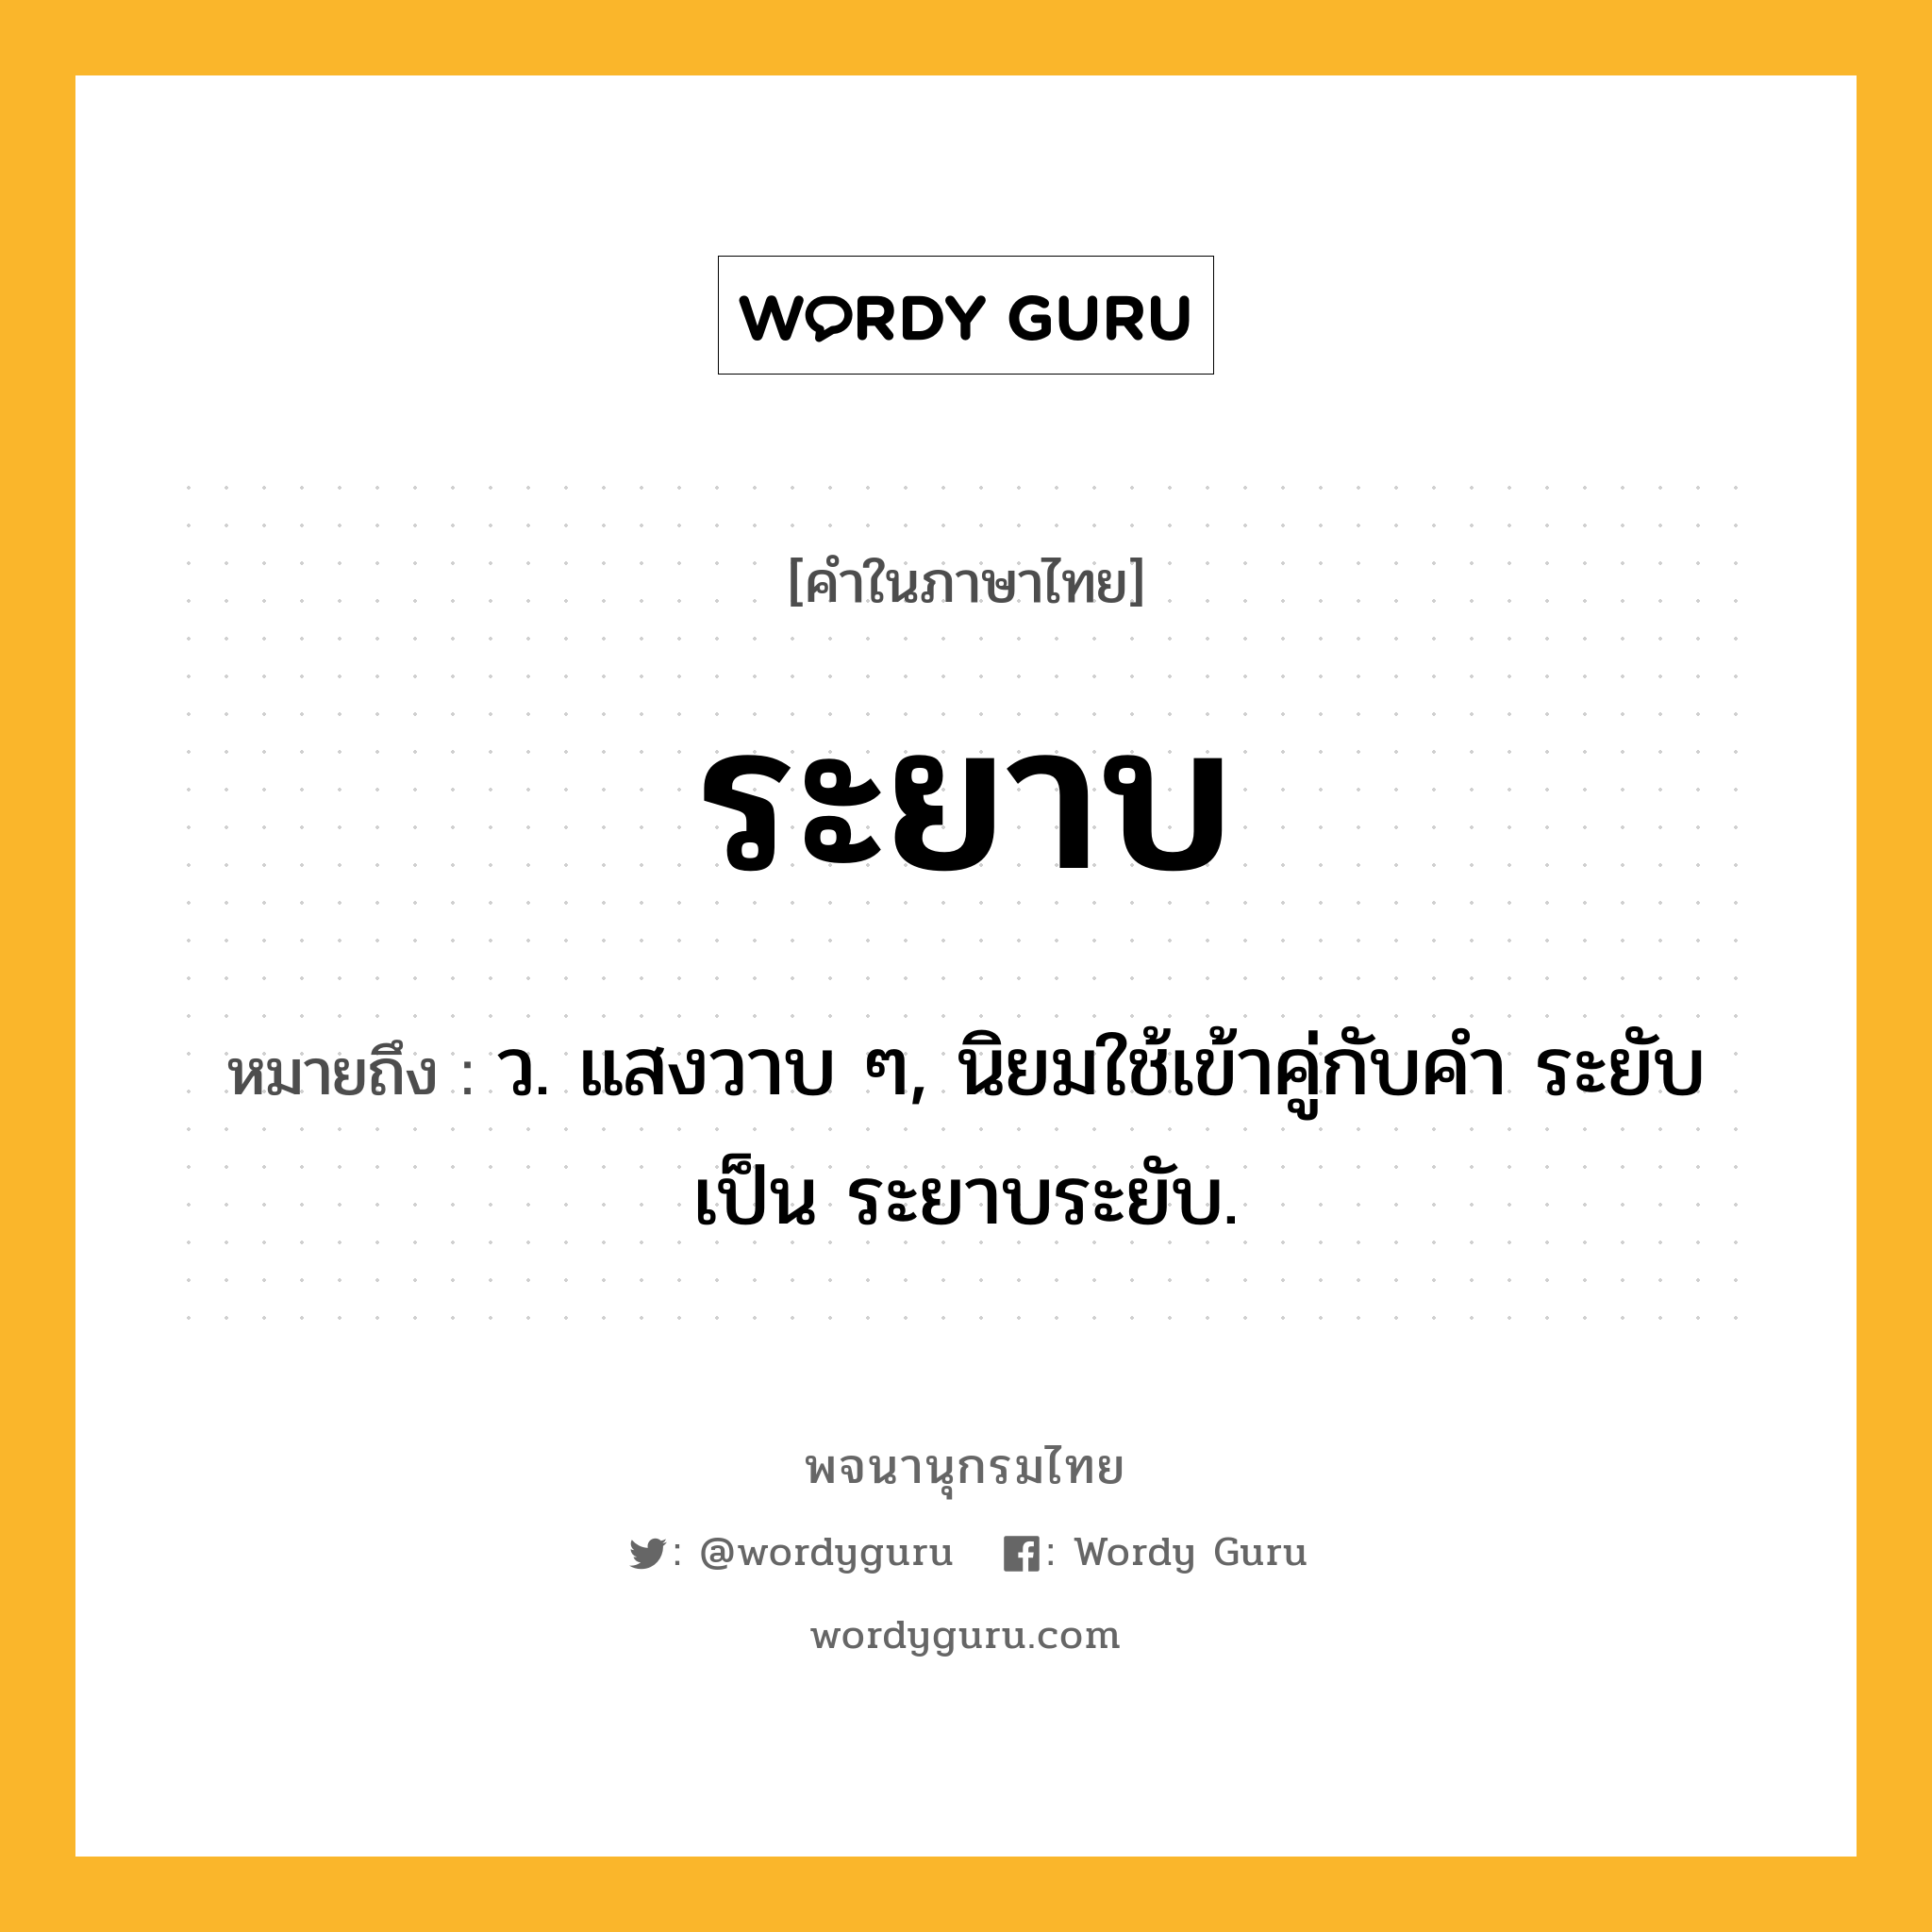 ระยาบ ความหมาย หมายถึงอะไร?, คำในภาษาไทย ระยาบ หมายถึง ว. แสงวาบ ๆ, นิยมใช้เข้าคู่กับคำ ระยับ เป็น ระยาบระยับ.